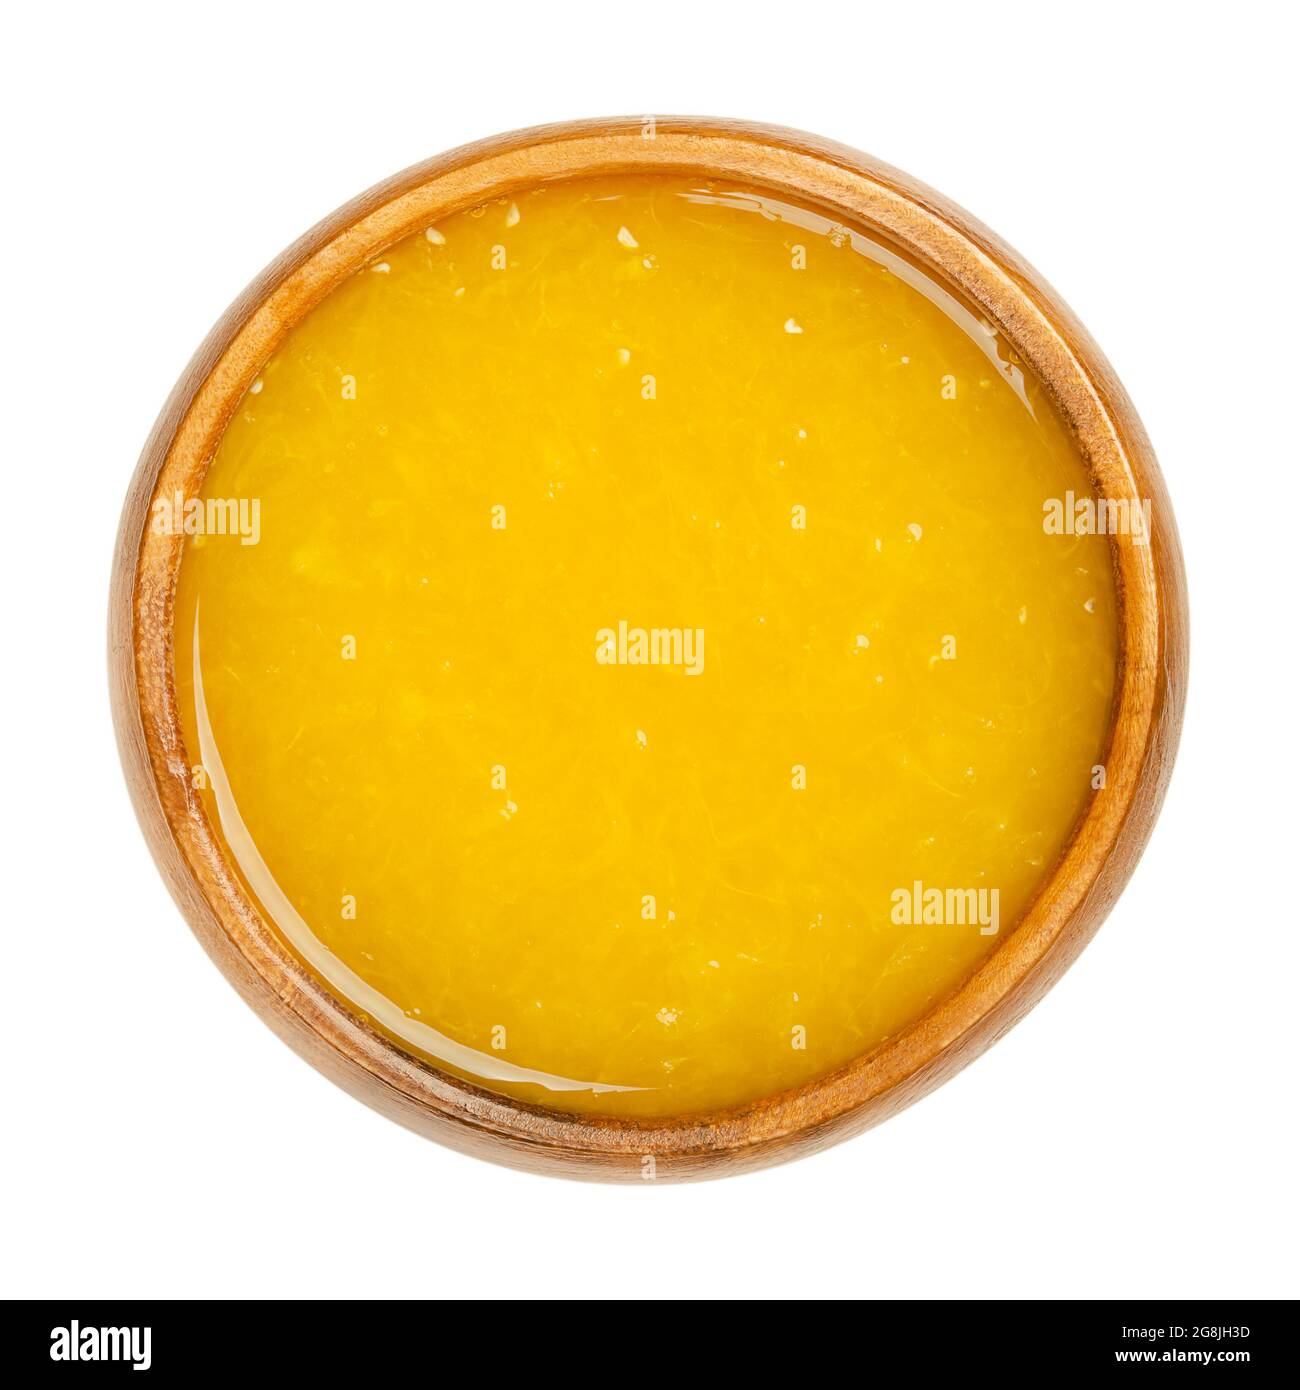 Jus d'orange fraîchement pressé avec pulpe de fruit dans un bol en bois. Jus d'orange fraîchement pressé, un rafraîchissement sucré de couleur jaune intense. Banque D'Images